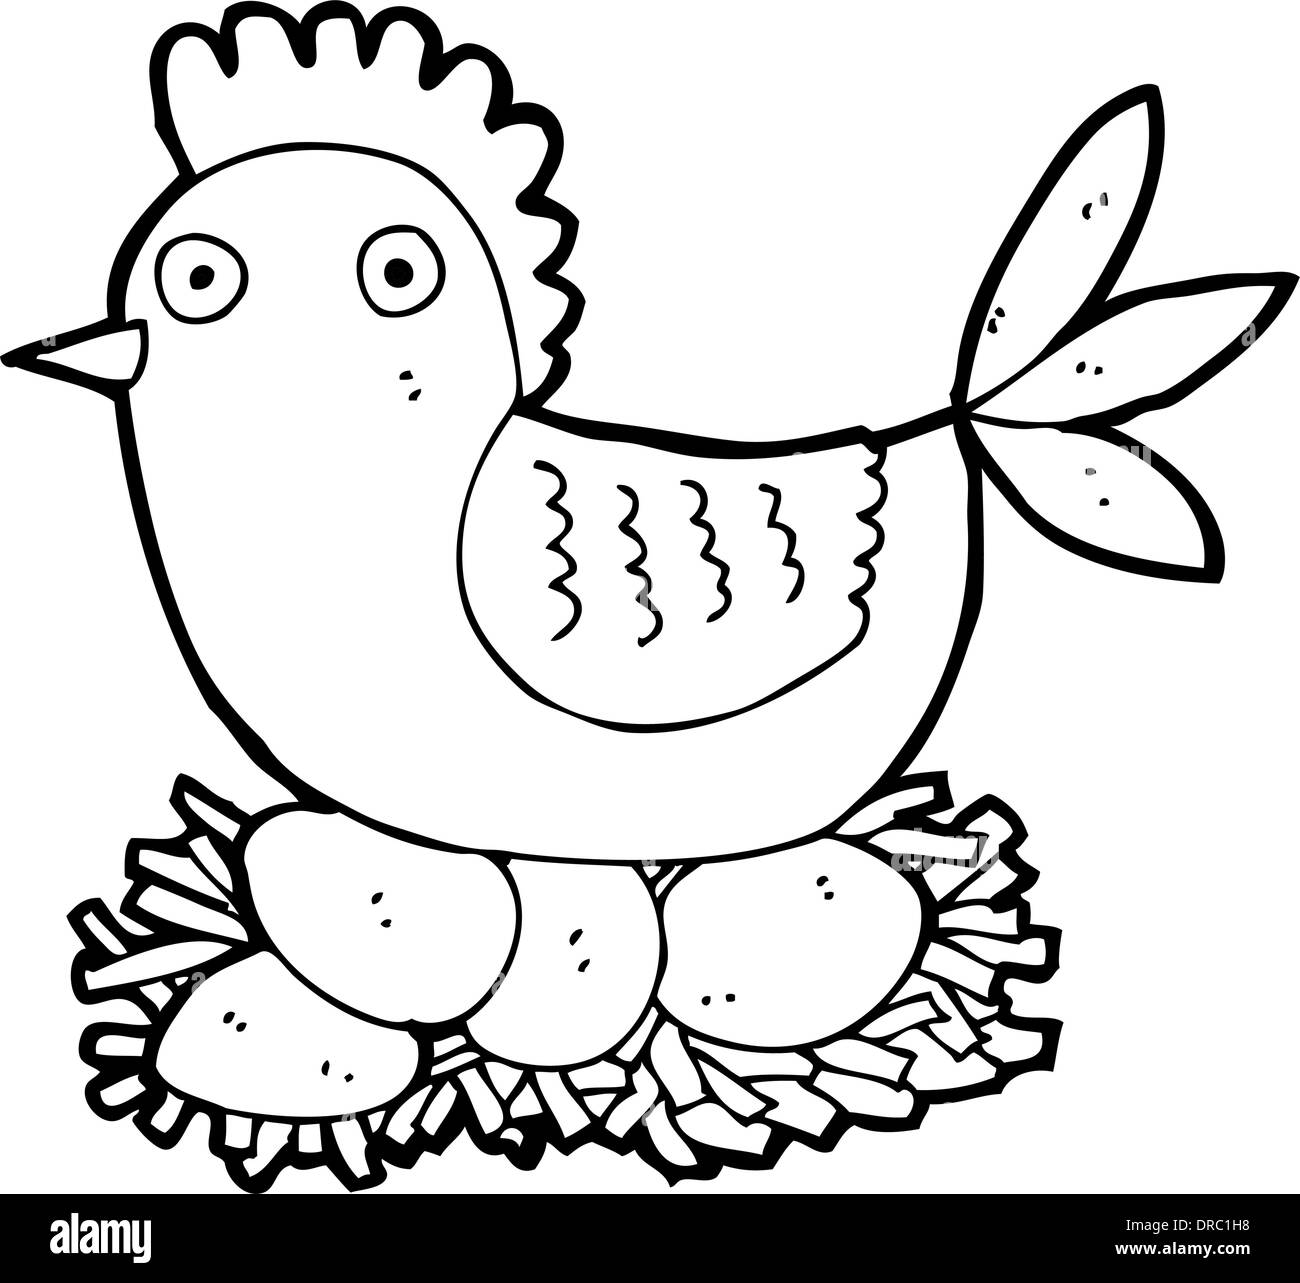 Caricature sur les oeufs de poule Illustration de Vecteur